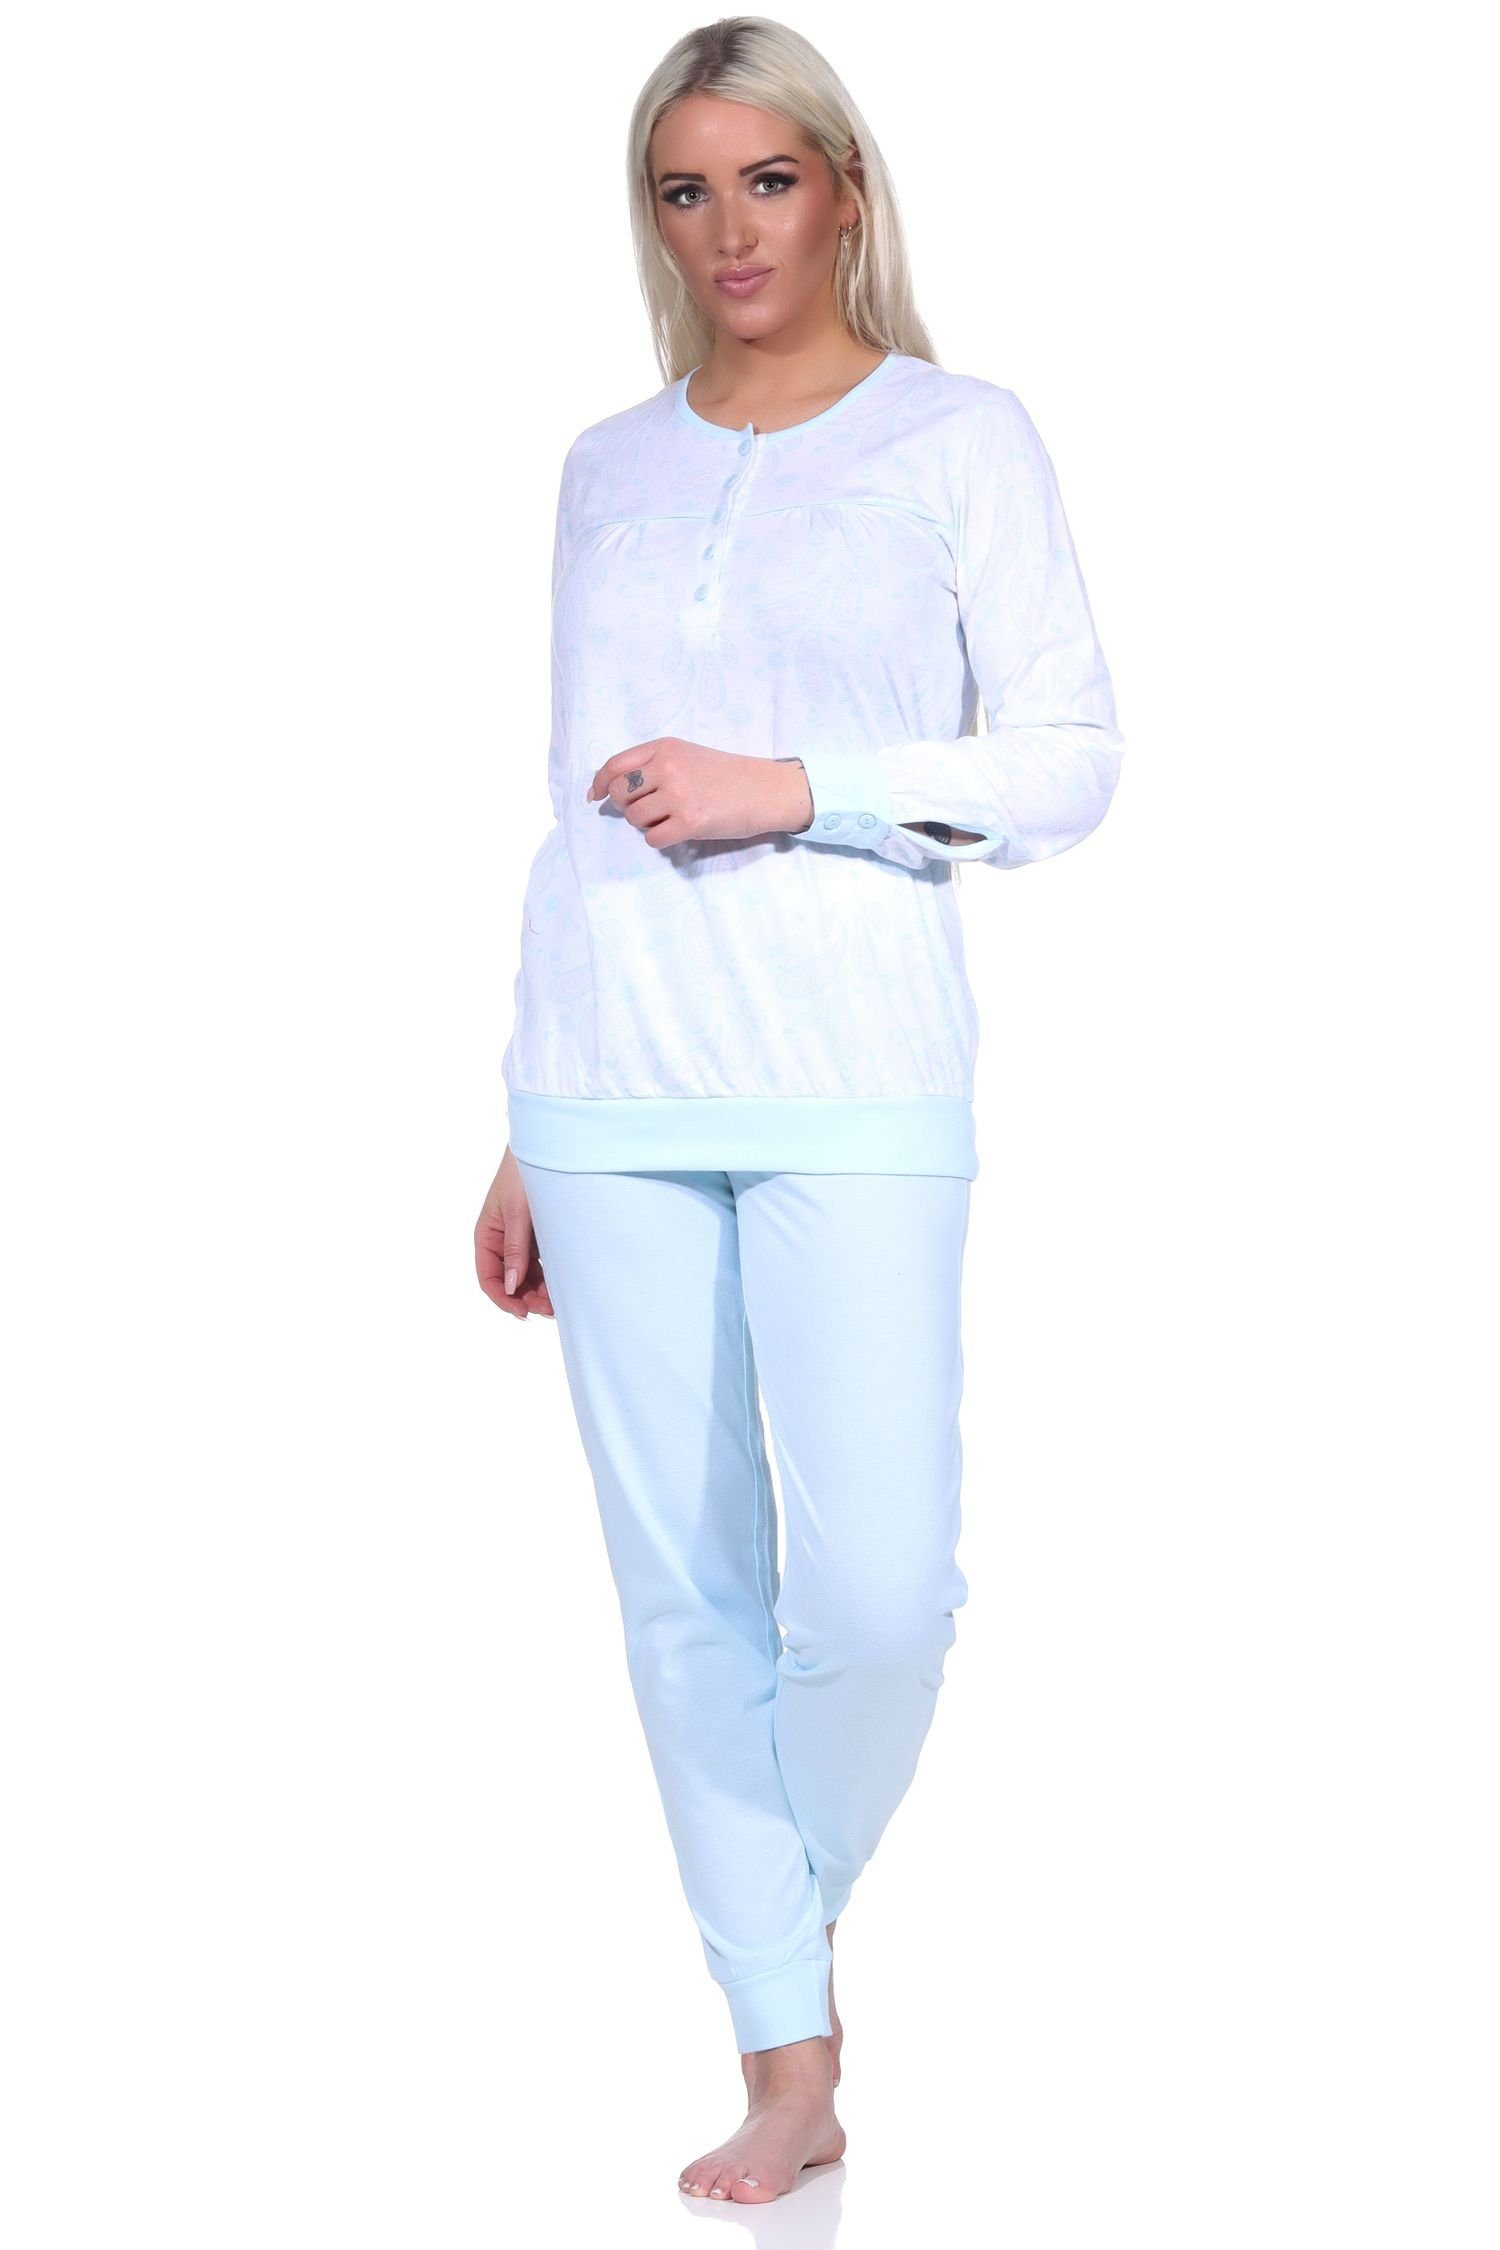 Hals hellblau und mit Knopfleiste Normann Design Schlafanzug Bündchen Paysley im Damen Pyjama